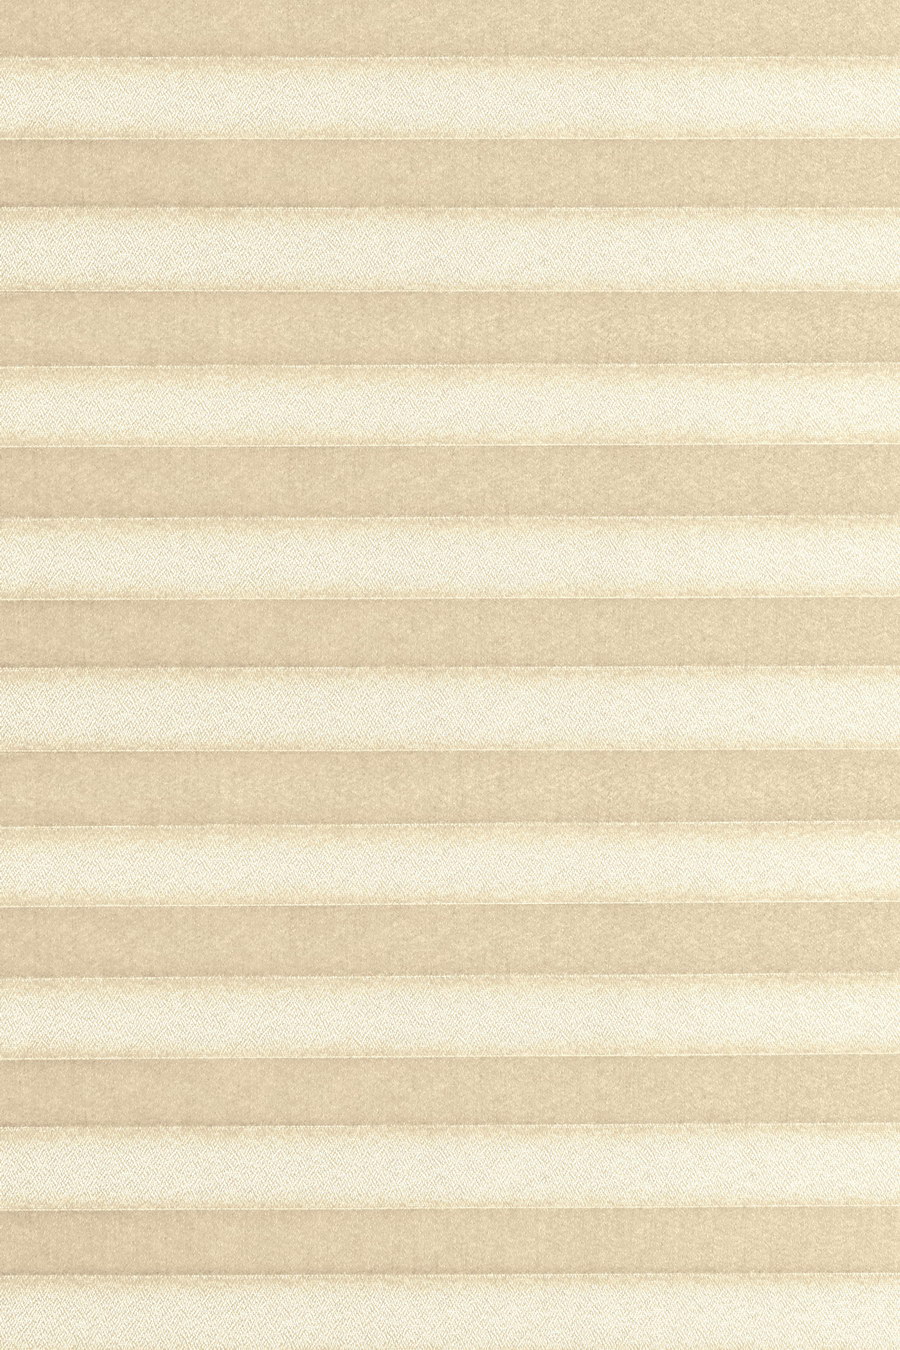 light-beige CARA PERLMUTT B1 20403